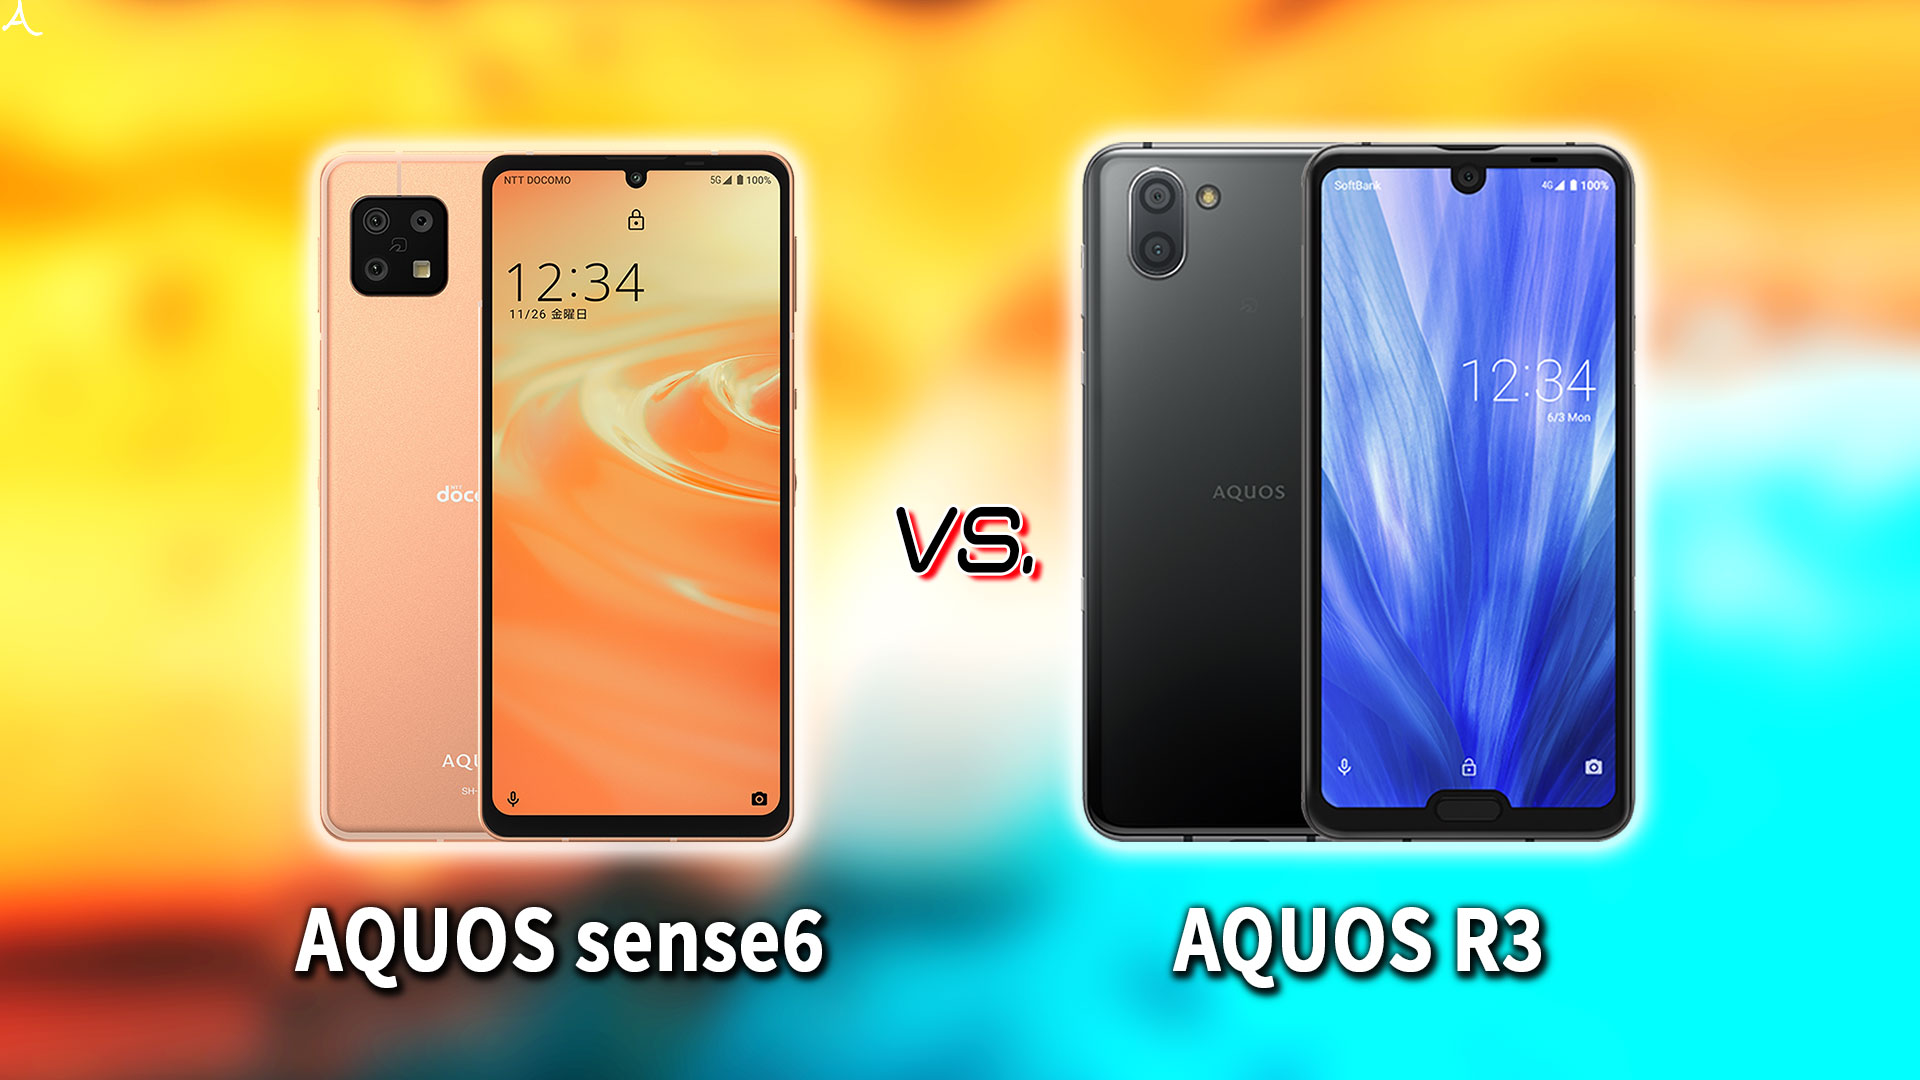 ｢AQUOS sense6｣と｢AQUOS R3｣の違いを比較：どっちを買う？